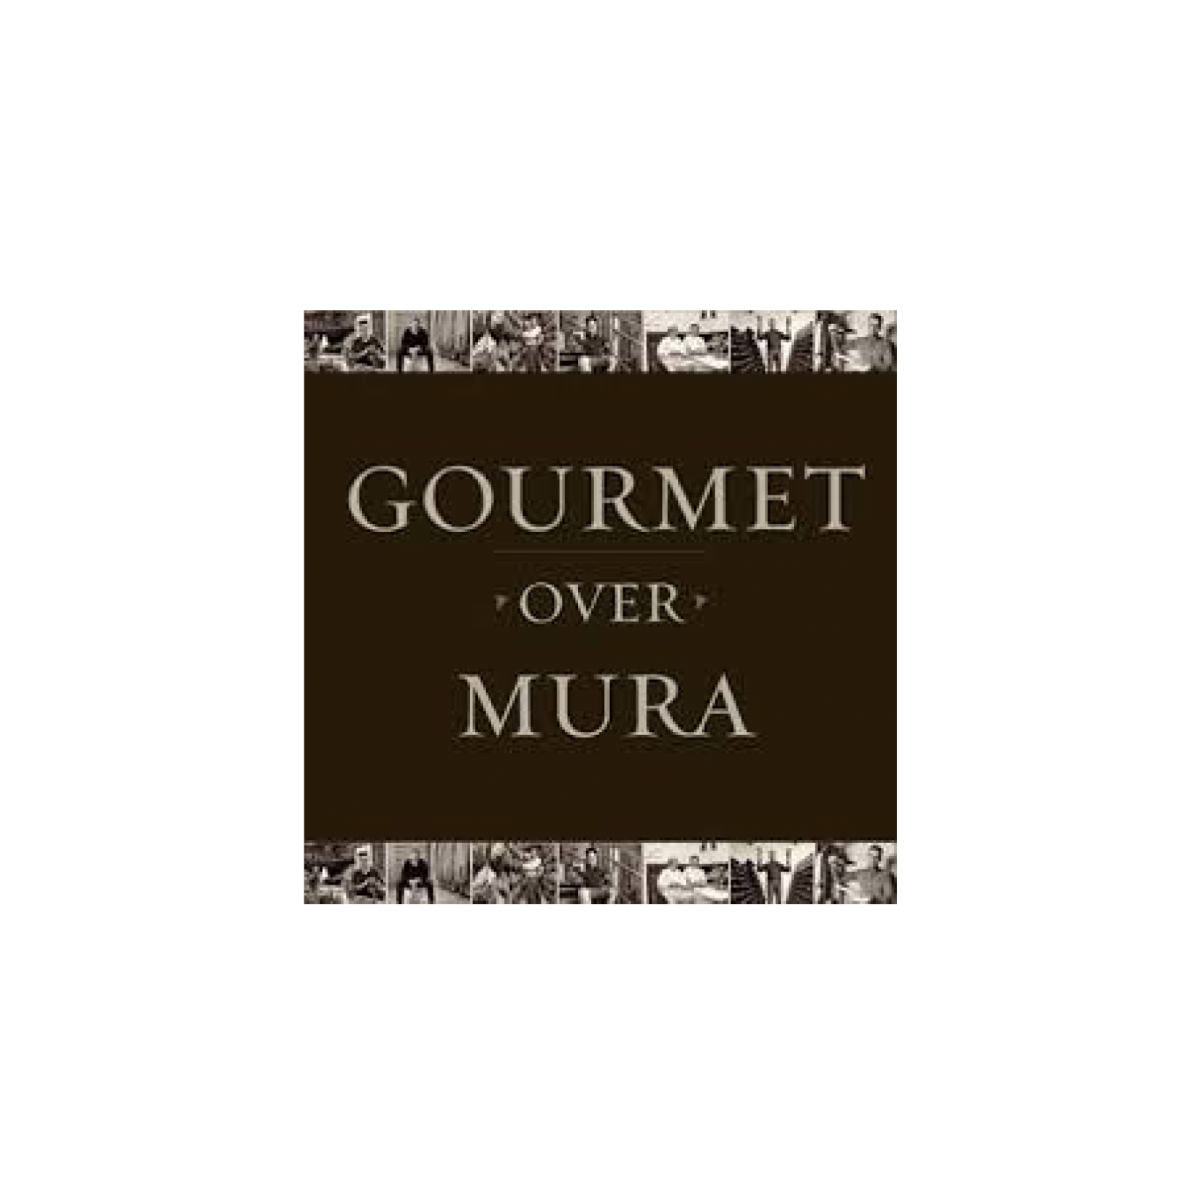 Gourmet over Mura